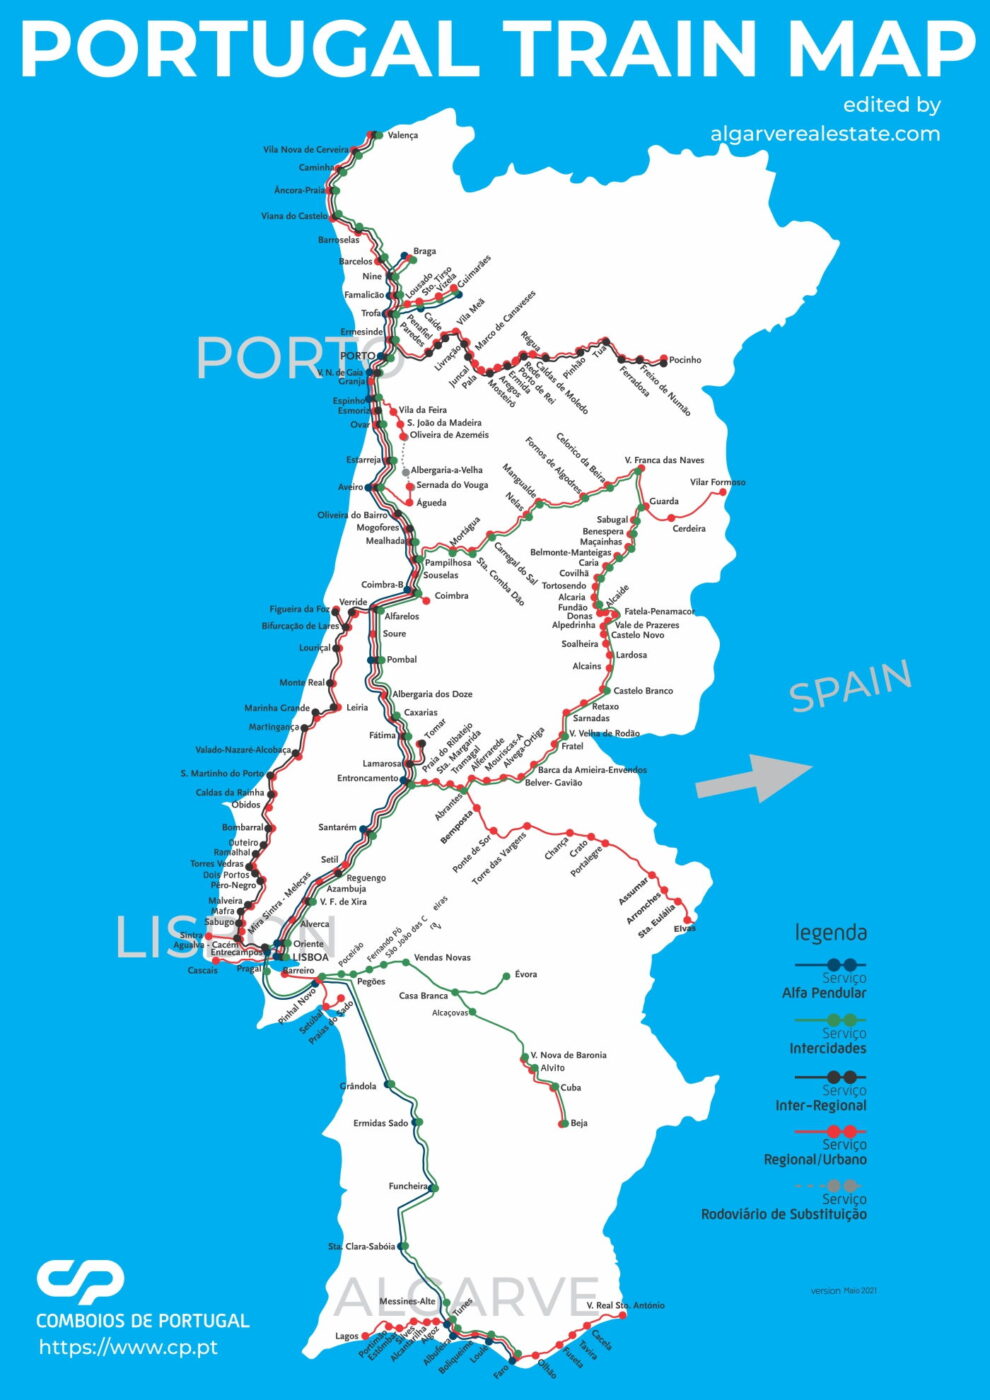 Mapa de Portugal mostrando as linhas ferroviárias, com cores diferentes representando os vários tipos de serviços ferroviários, incluindo trens rápidos, trens regionais e trens intermunicipais